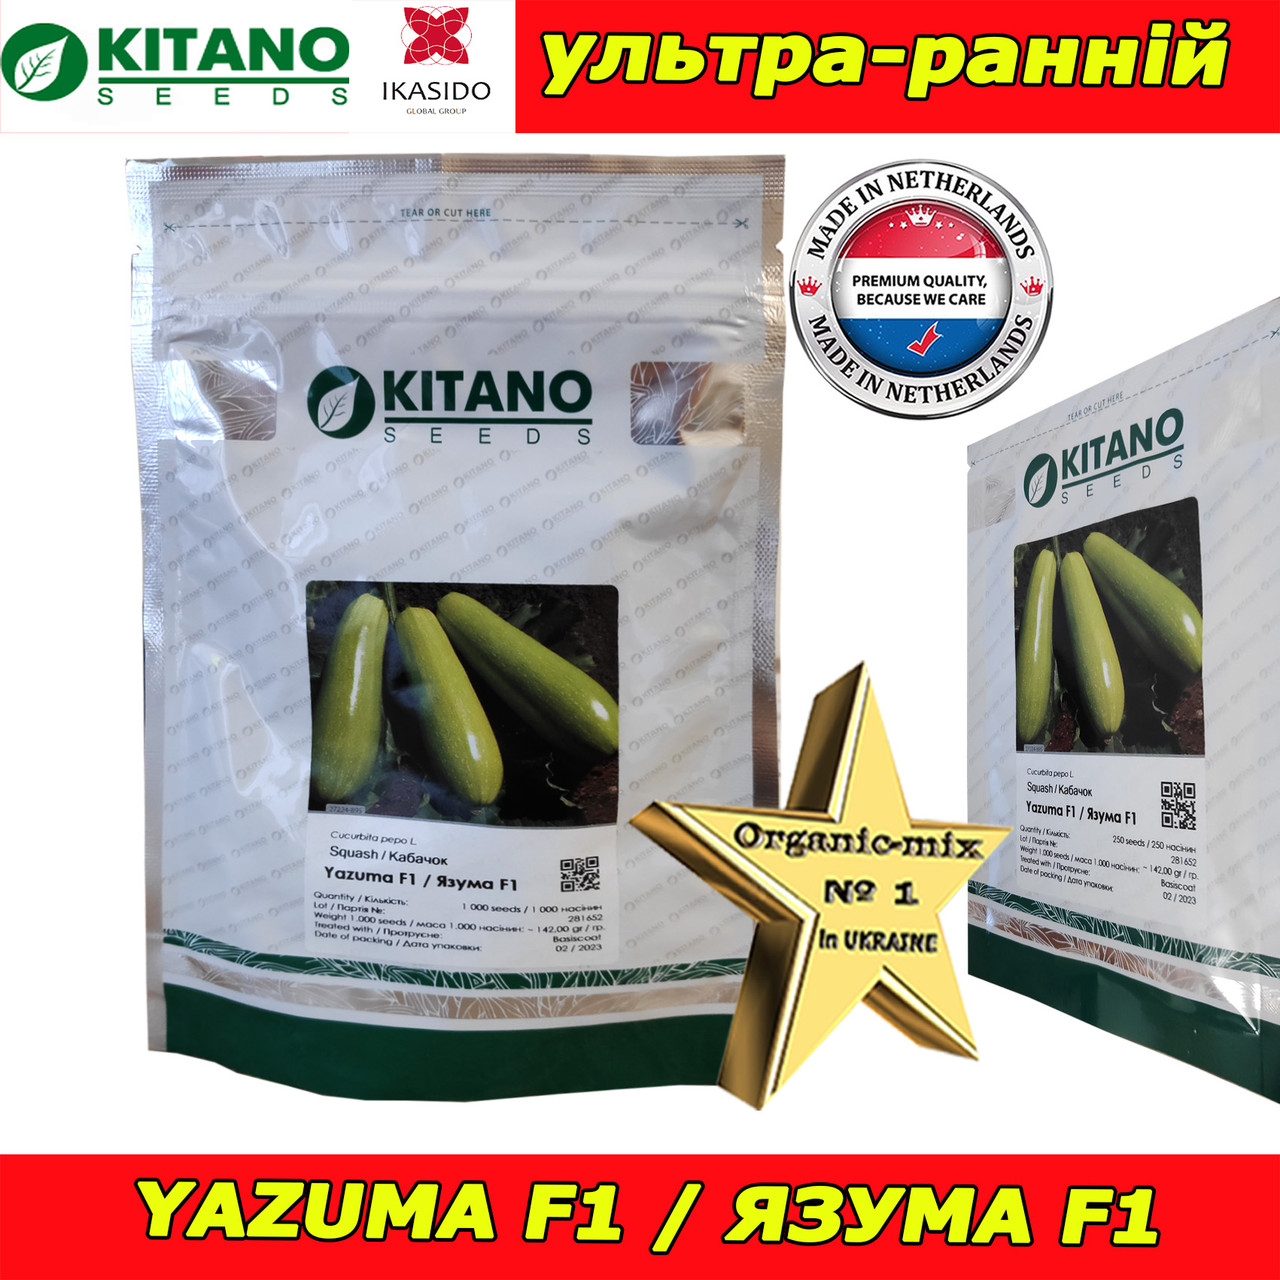 Кабачок високопродуктивний ультра-ранній Yazuma F1 / Язума F1 (KS 3714) , 250 насінин, ТМ Kitano Seeds